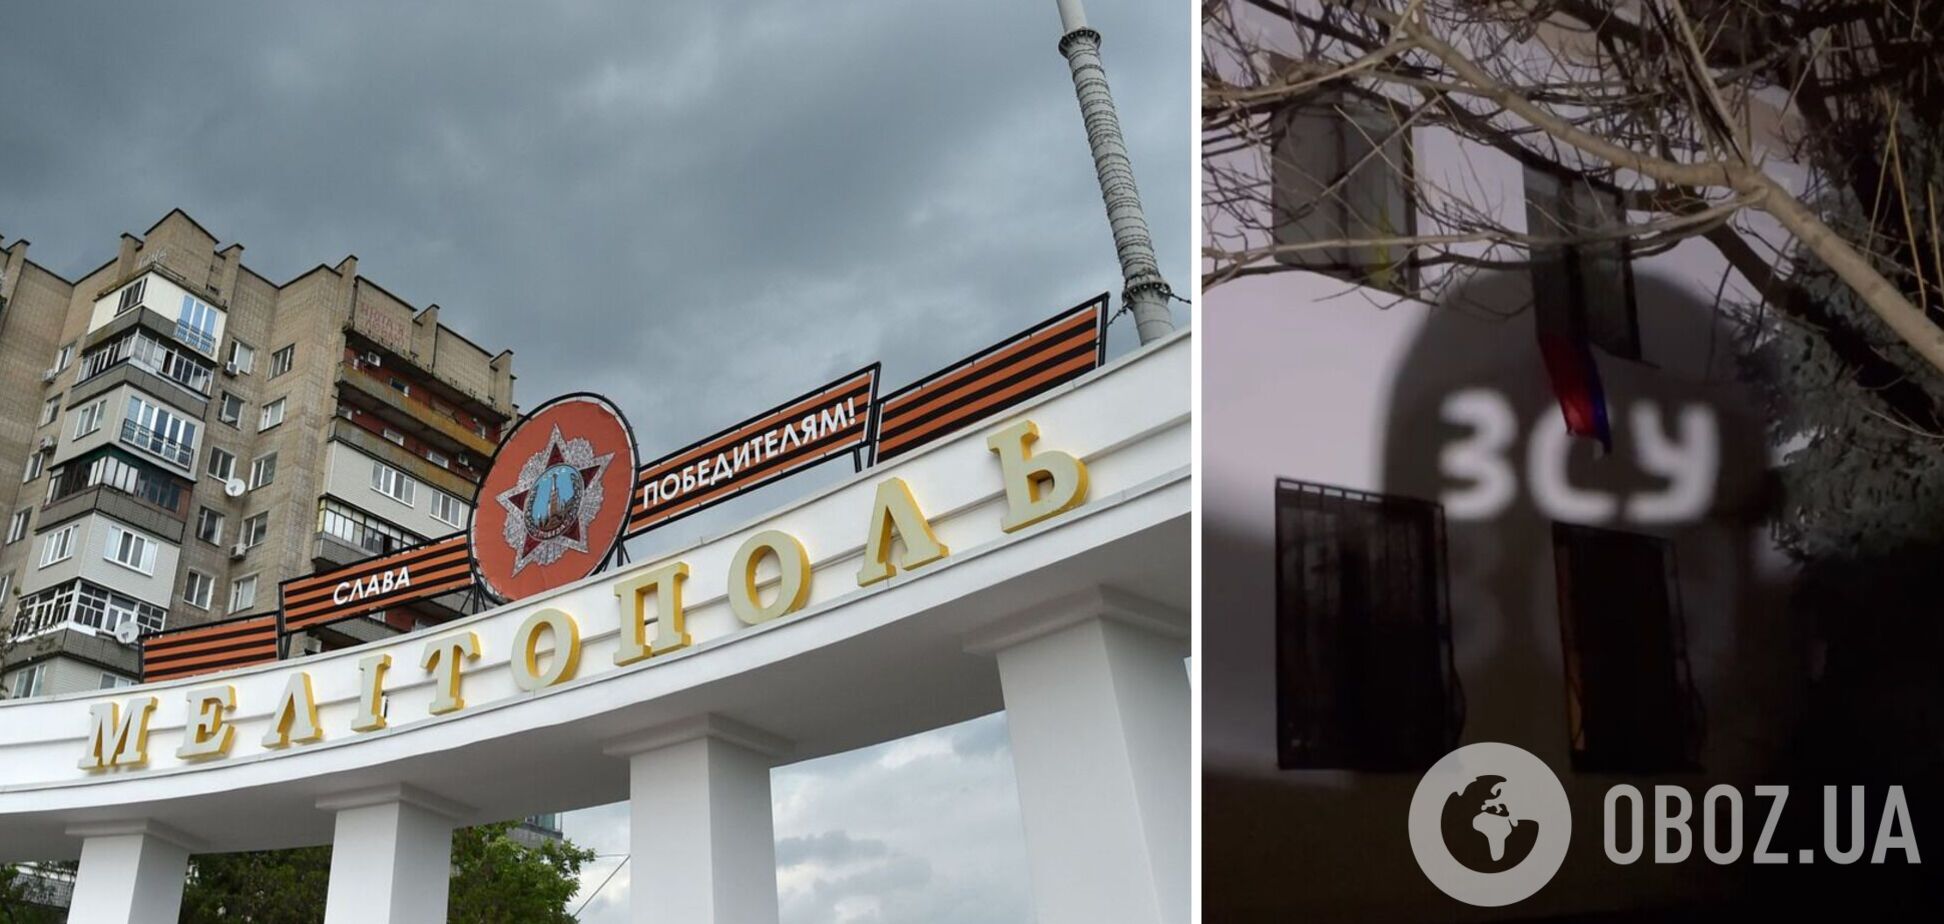 'Мелітополь чекає на ЗСУ': партизани влаштували сміливе світлове шоу біля окупаційної адміністрації. Відео